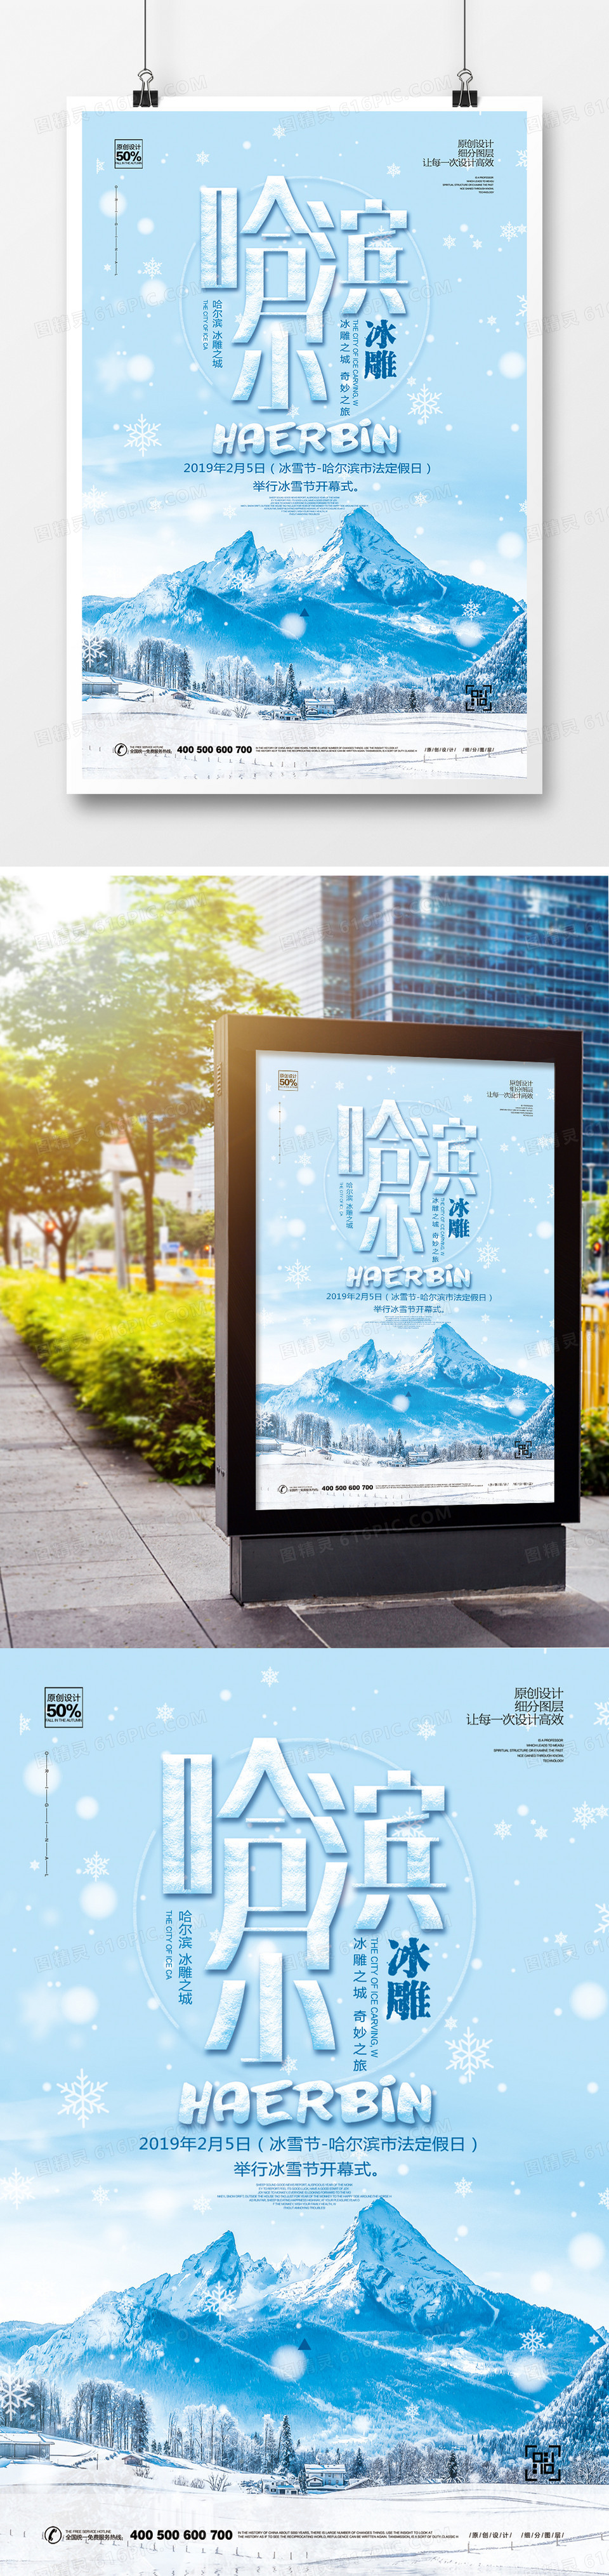 创意哈尔滨宣传海报设计模板